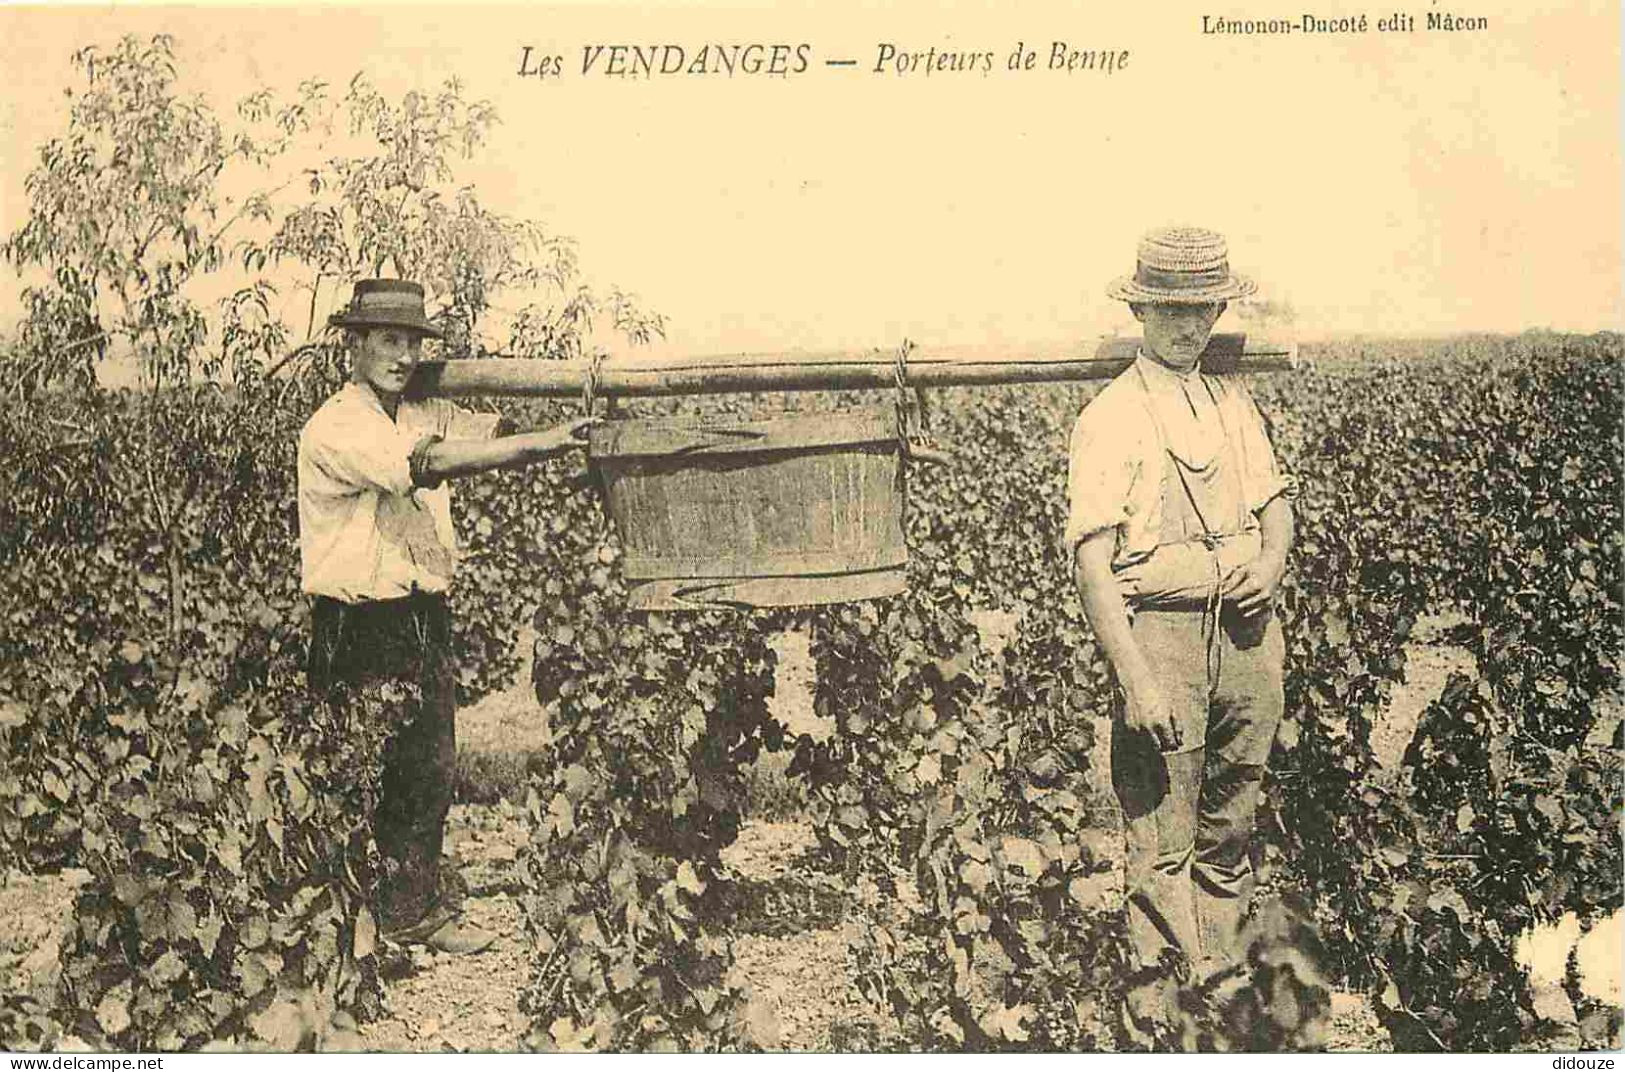 Reproduction CPA - Agriculture - Vigne - Les Vendanges - Porteurs De Benne - C'était La France - No 118 - CPM Format CPA - Vigne